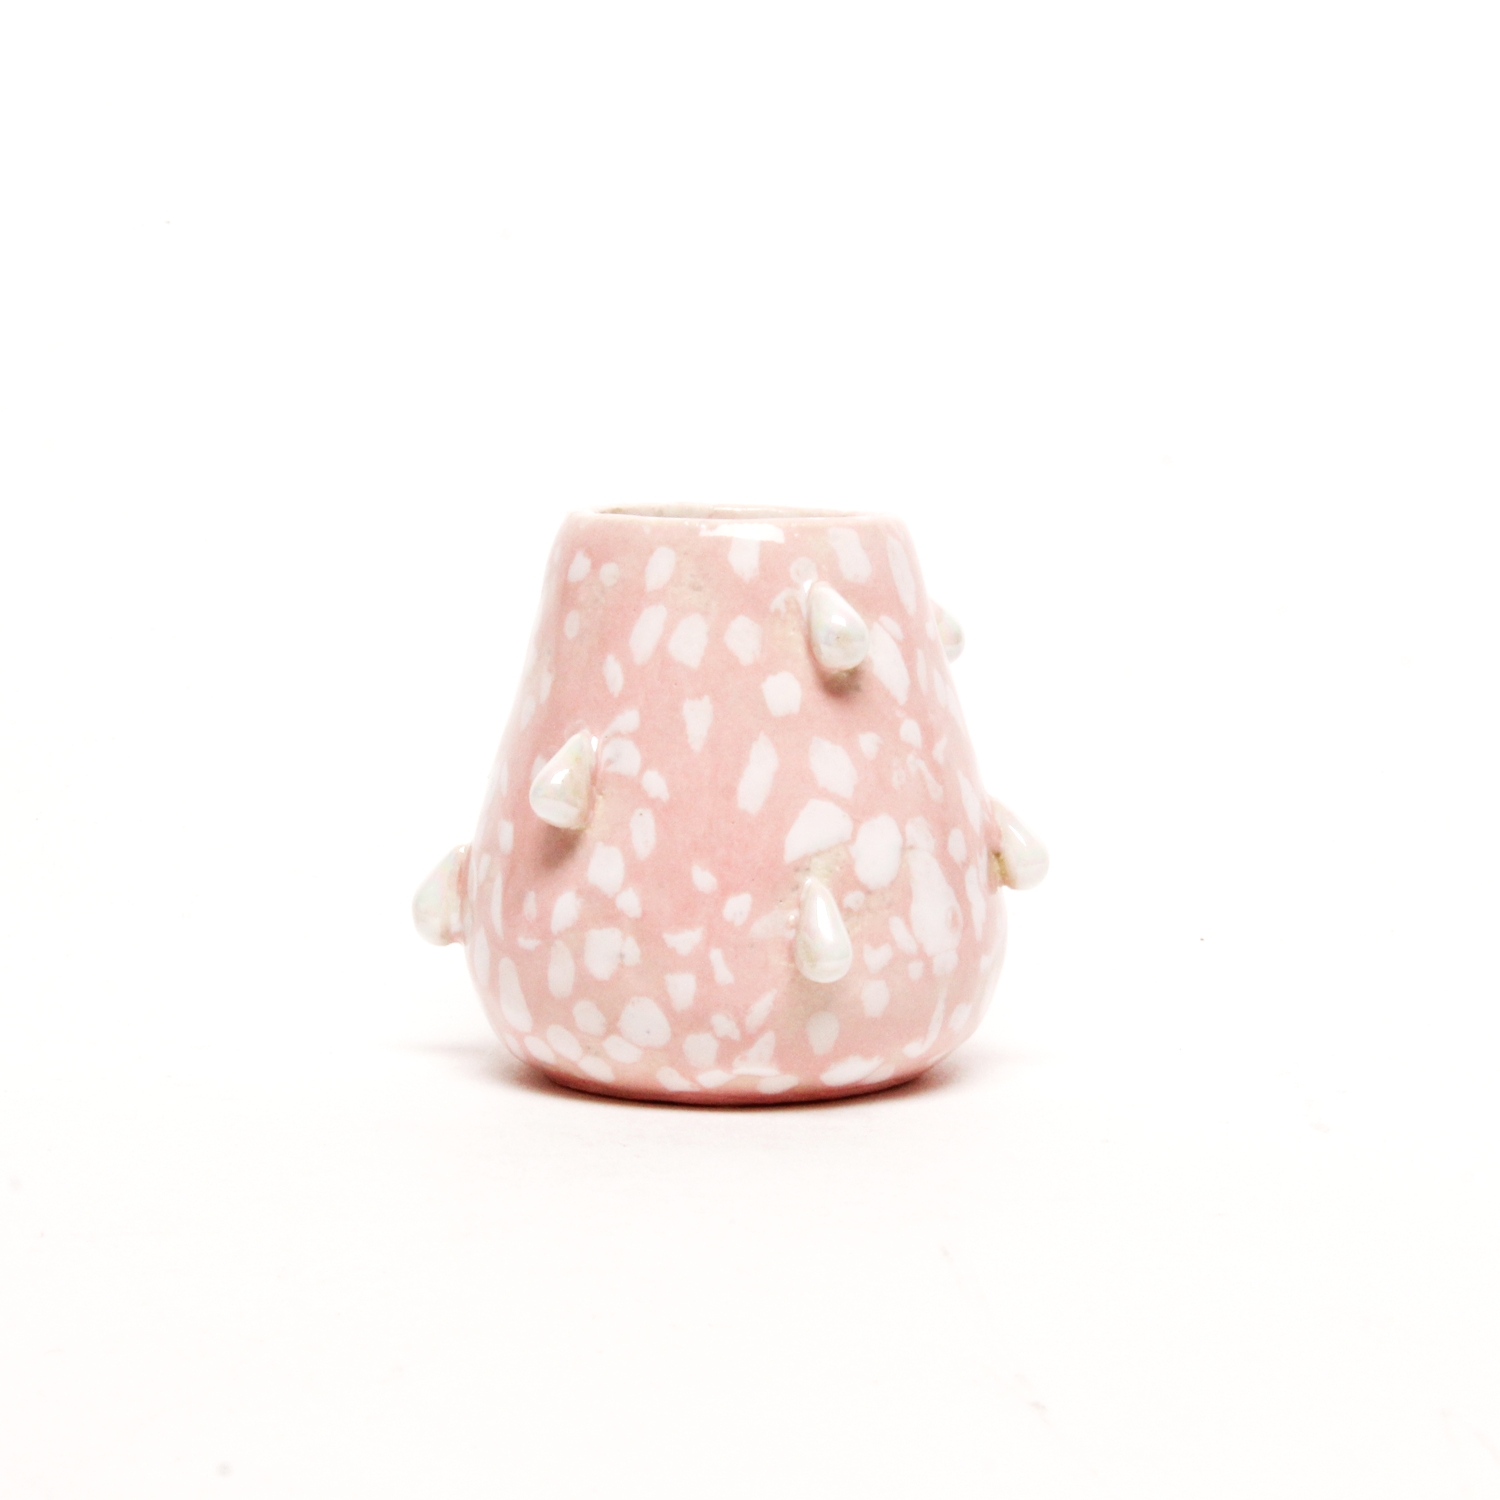 Hannah Faas: Medium Vase Product Image 2 of 3